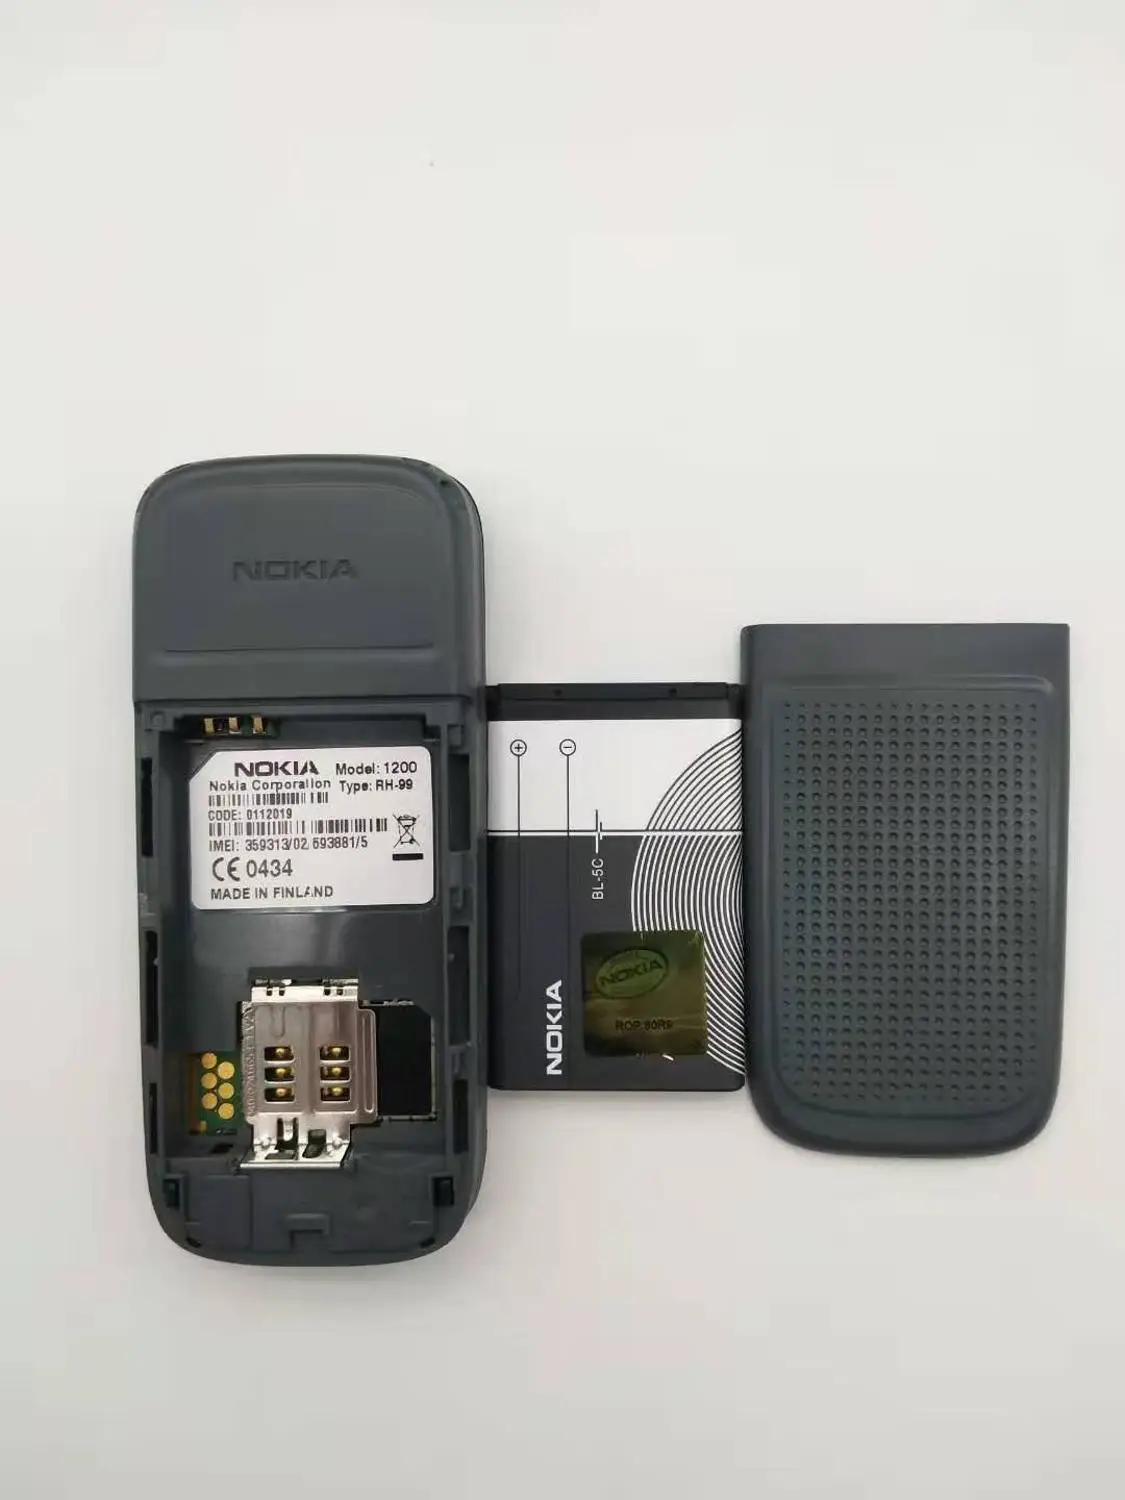 Nokia 1200 разблокированный gsm 900/1800 мобильный телефон с русским иврит польский язык Восстановленный